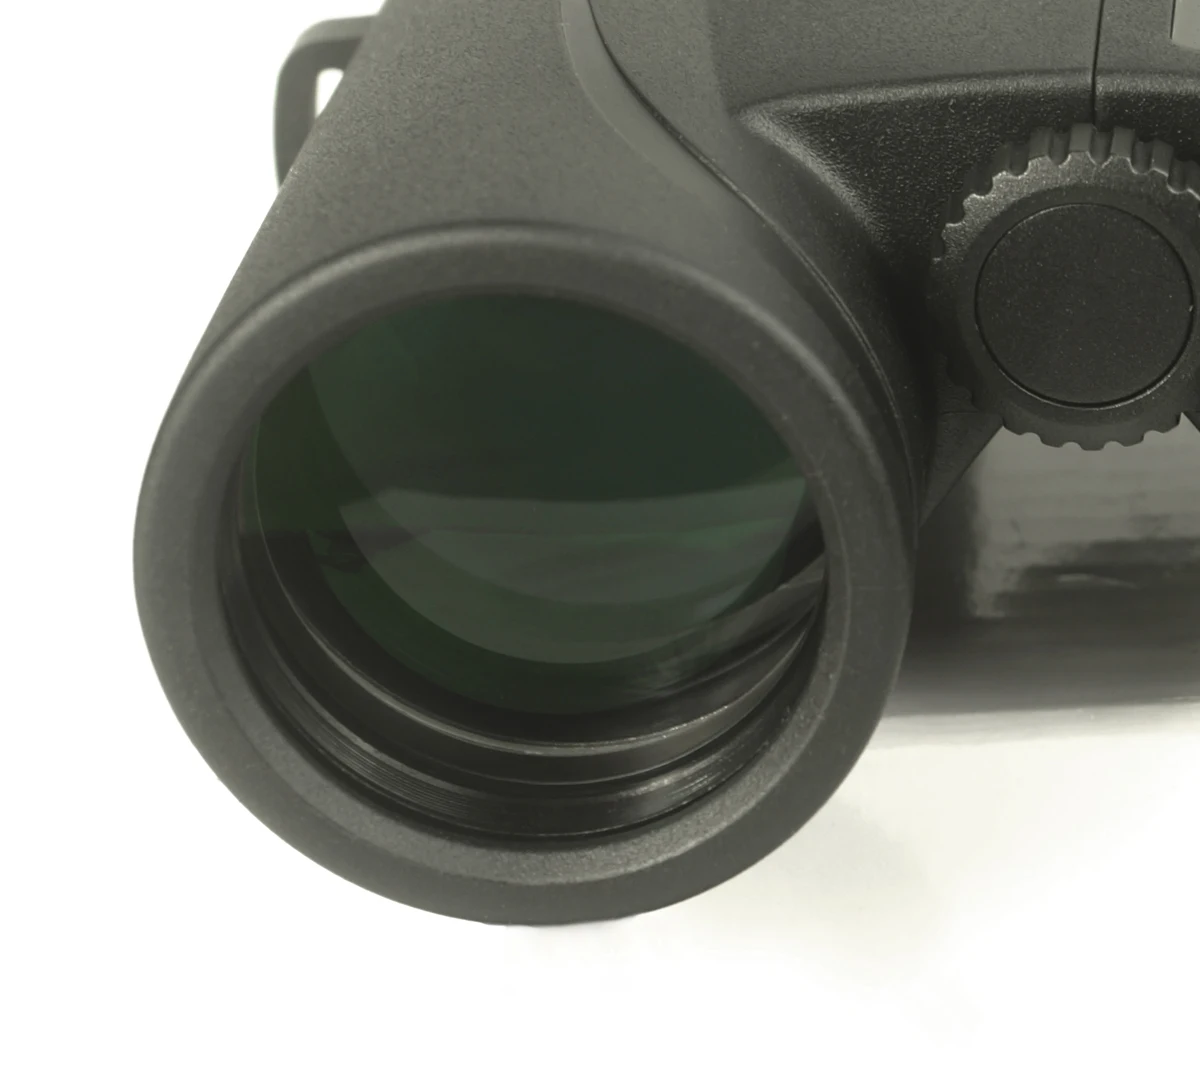 SKWoptics Снайпер 10x42 бинокль наблюдение за птицами, охота с фазовым покрытием Водонепроницаемый Bak4, Fogproof